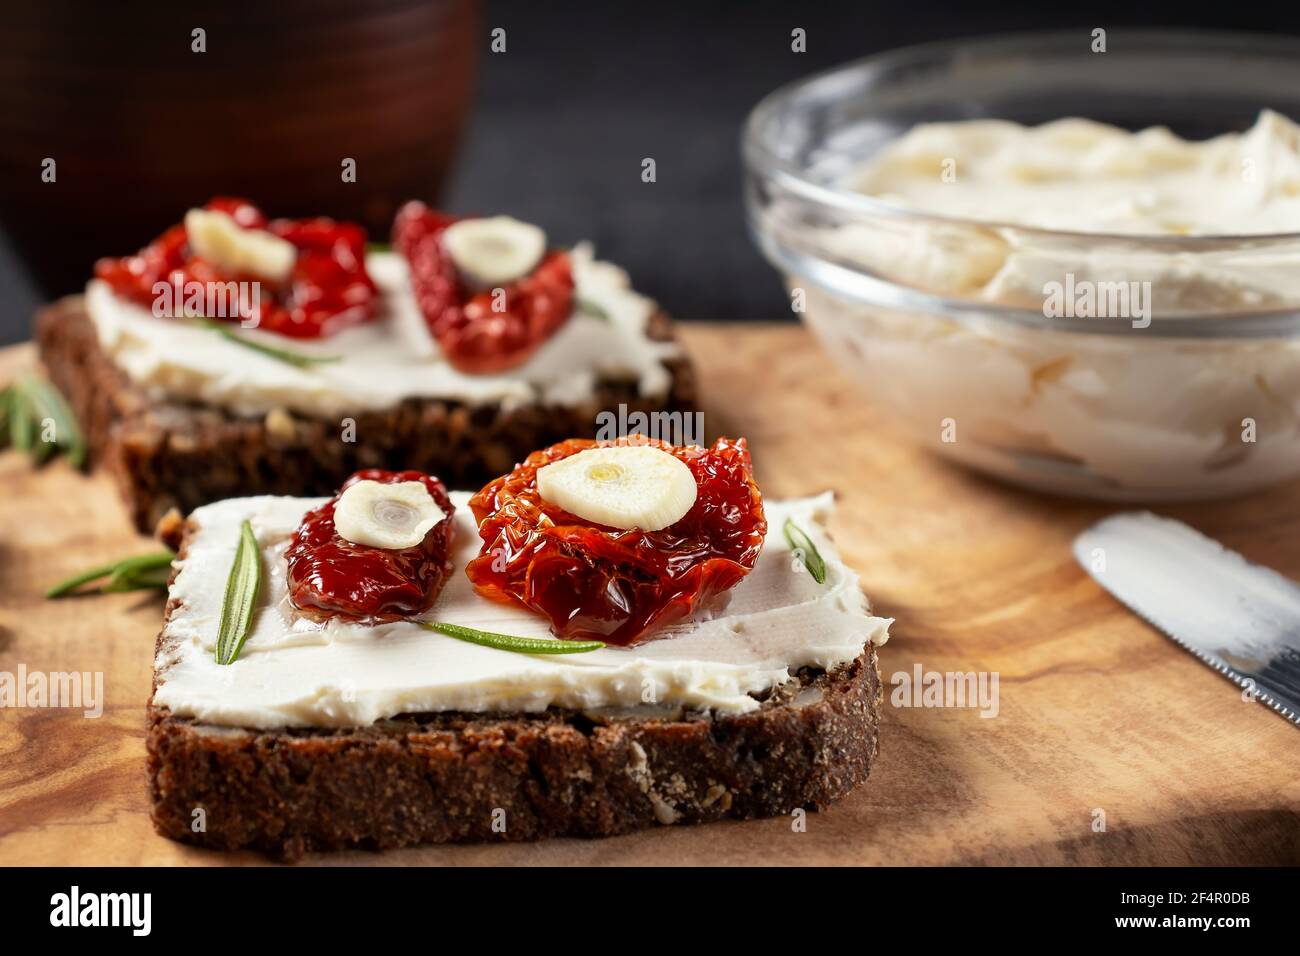 Petits-sandwiches multigrains faits maison avec fromage à la crème et tomates séchées sur un plateau en bois, gros plan. Concept de saine alimentation Banque D'Images